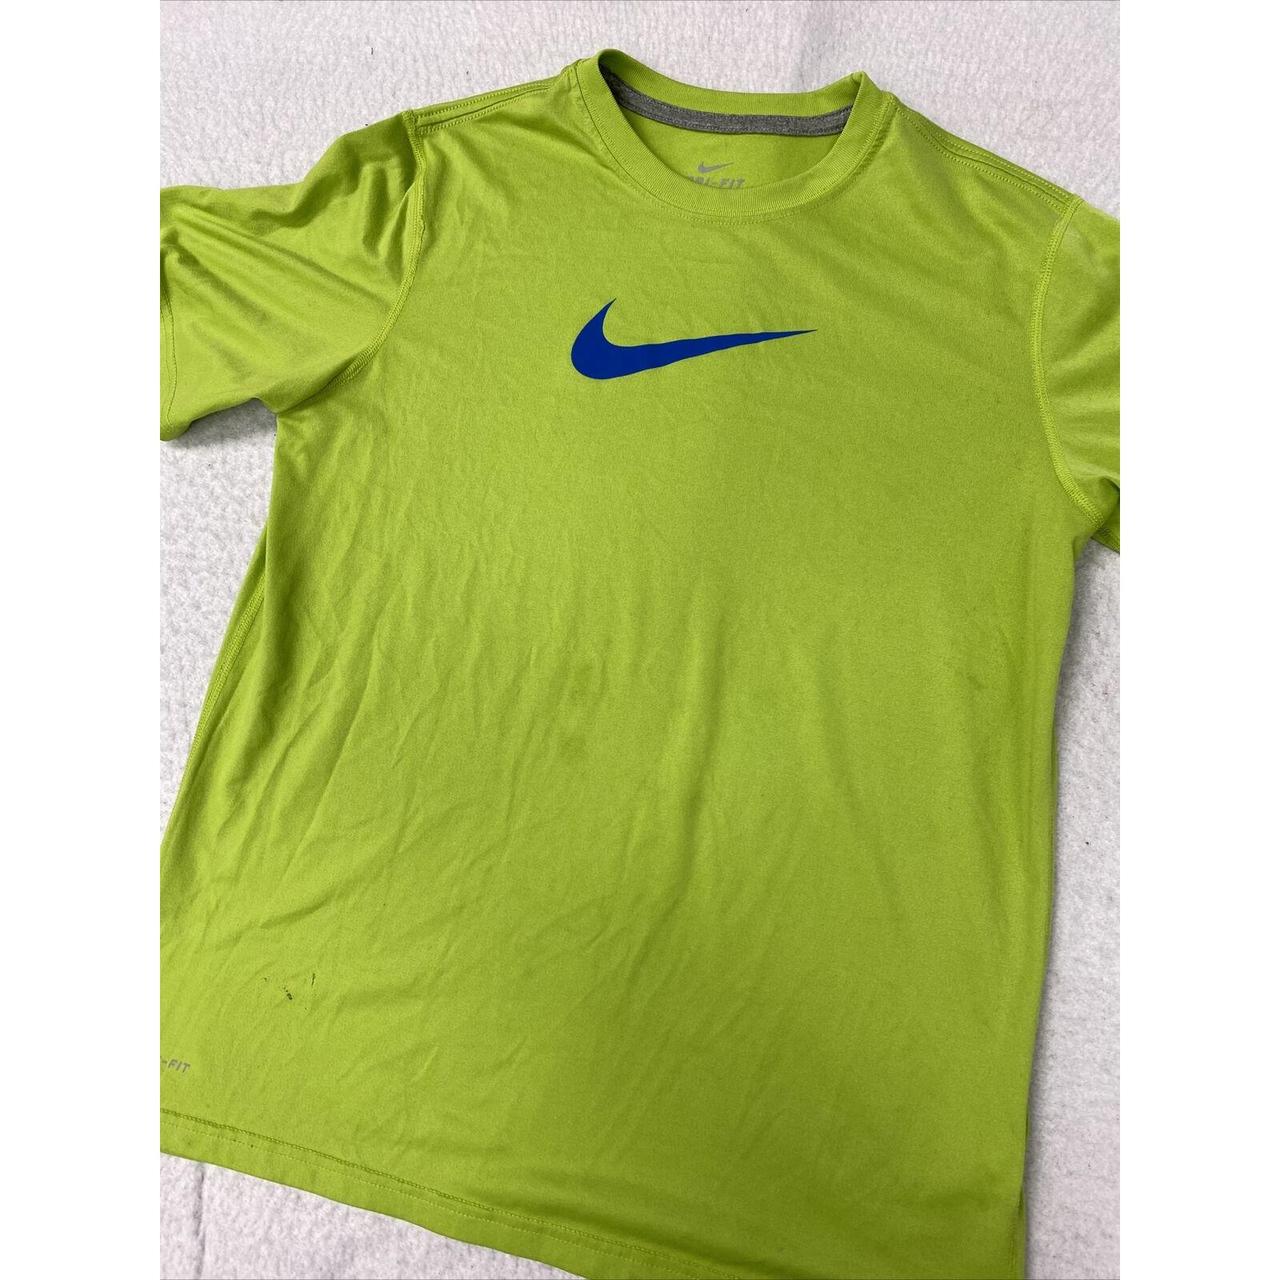 Womens Short Sleeve Nike Green Blue Shirt Xlarge XL... - Depop